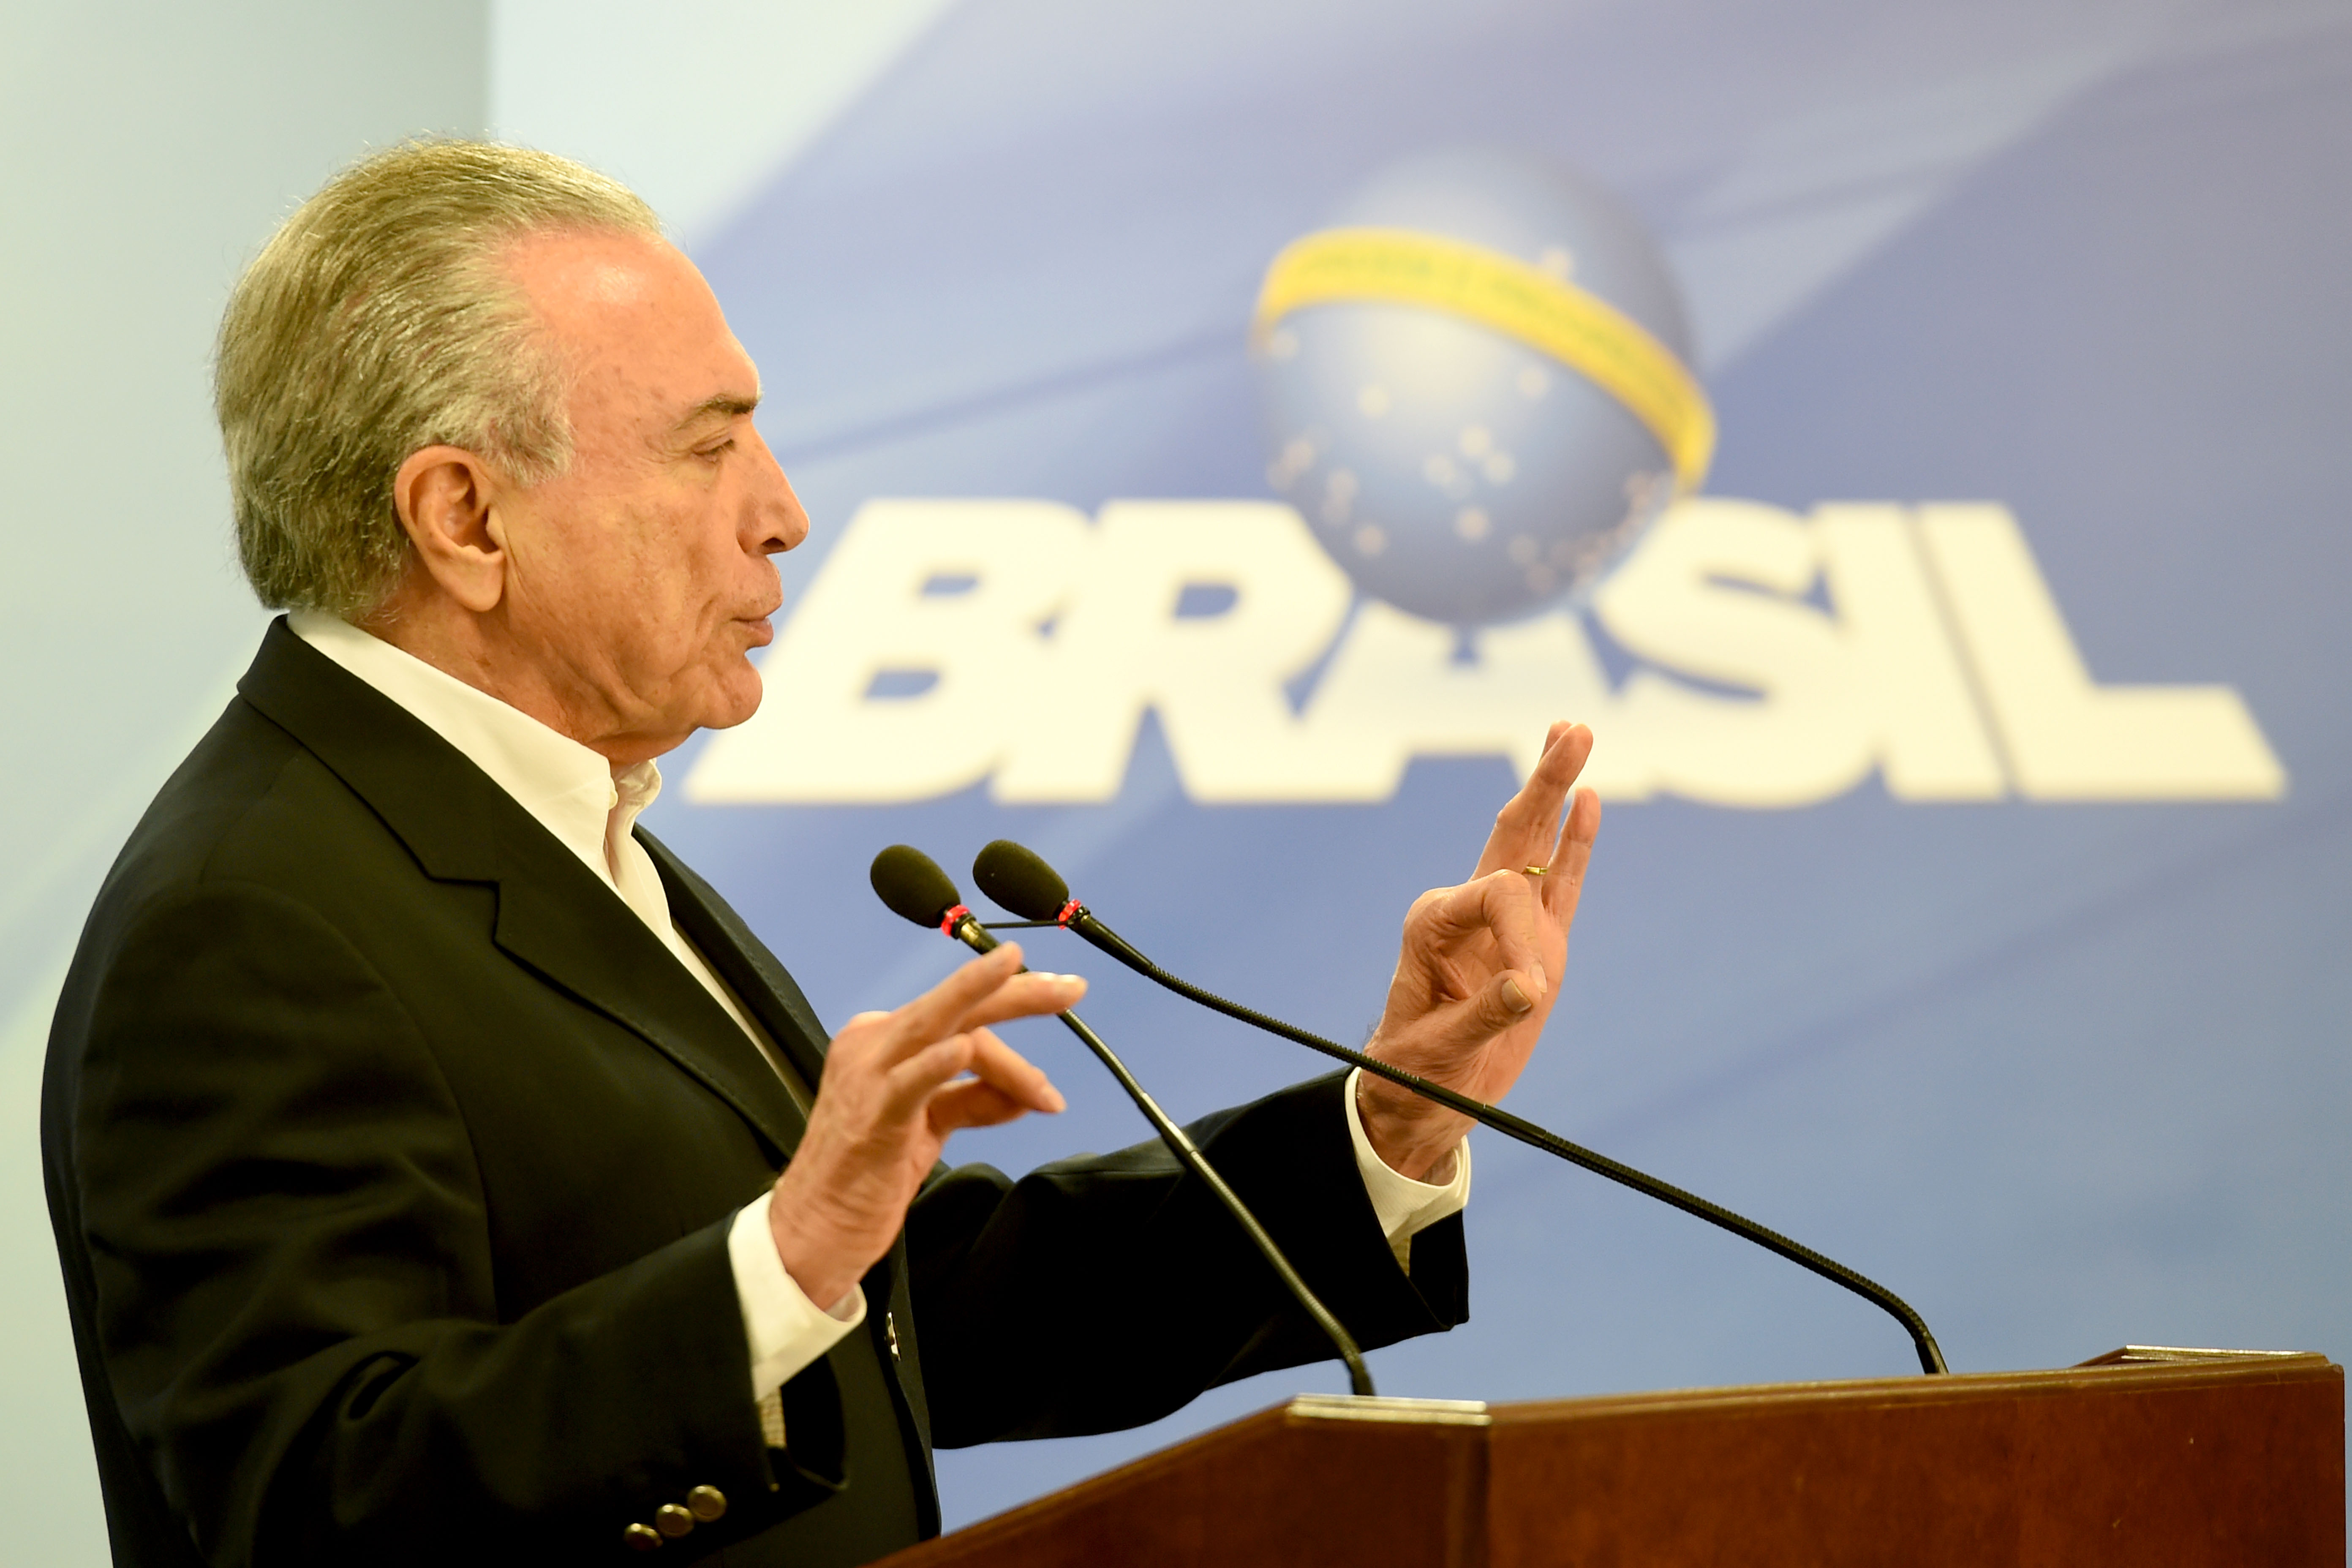 الرئيس البرازيلي يتحدث عن اتهامه بالفساد